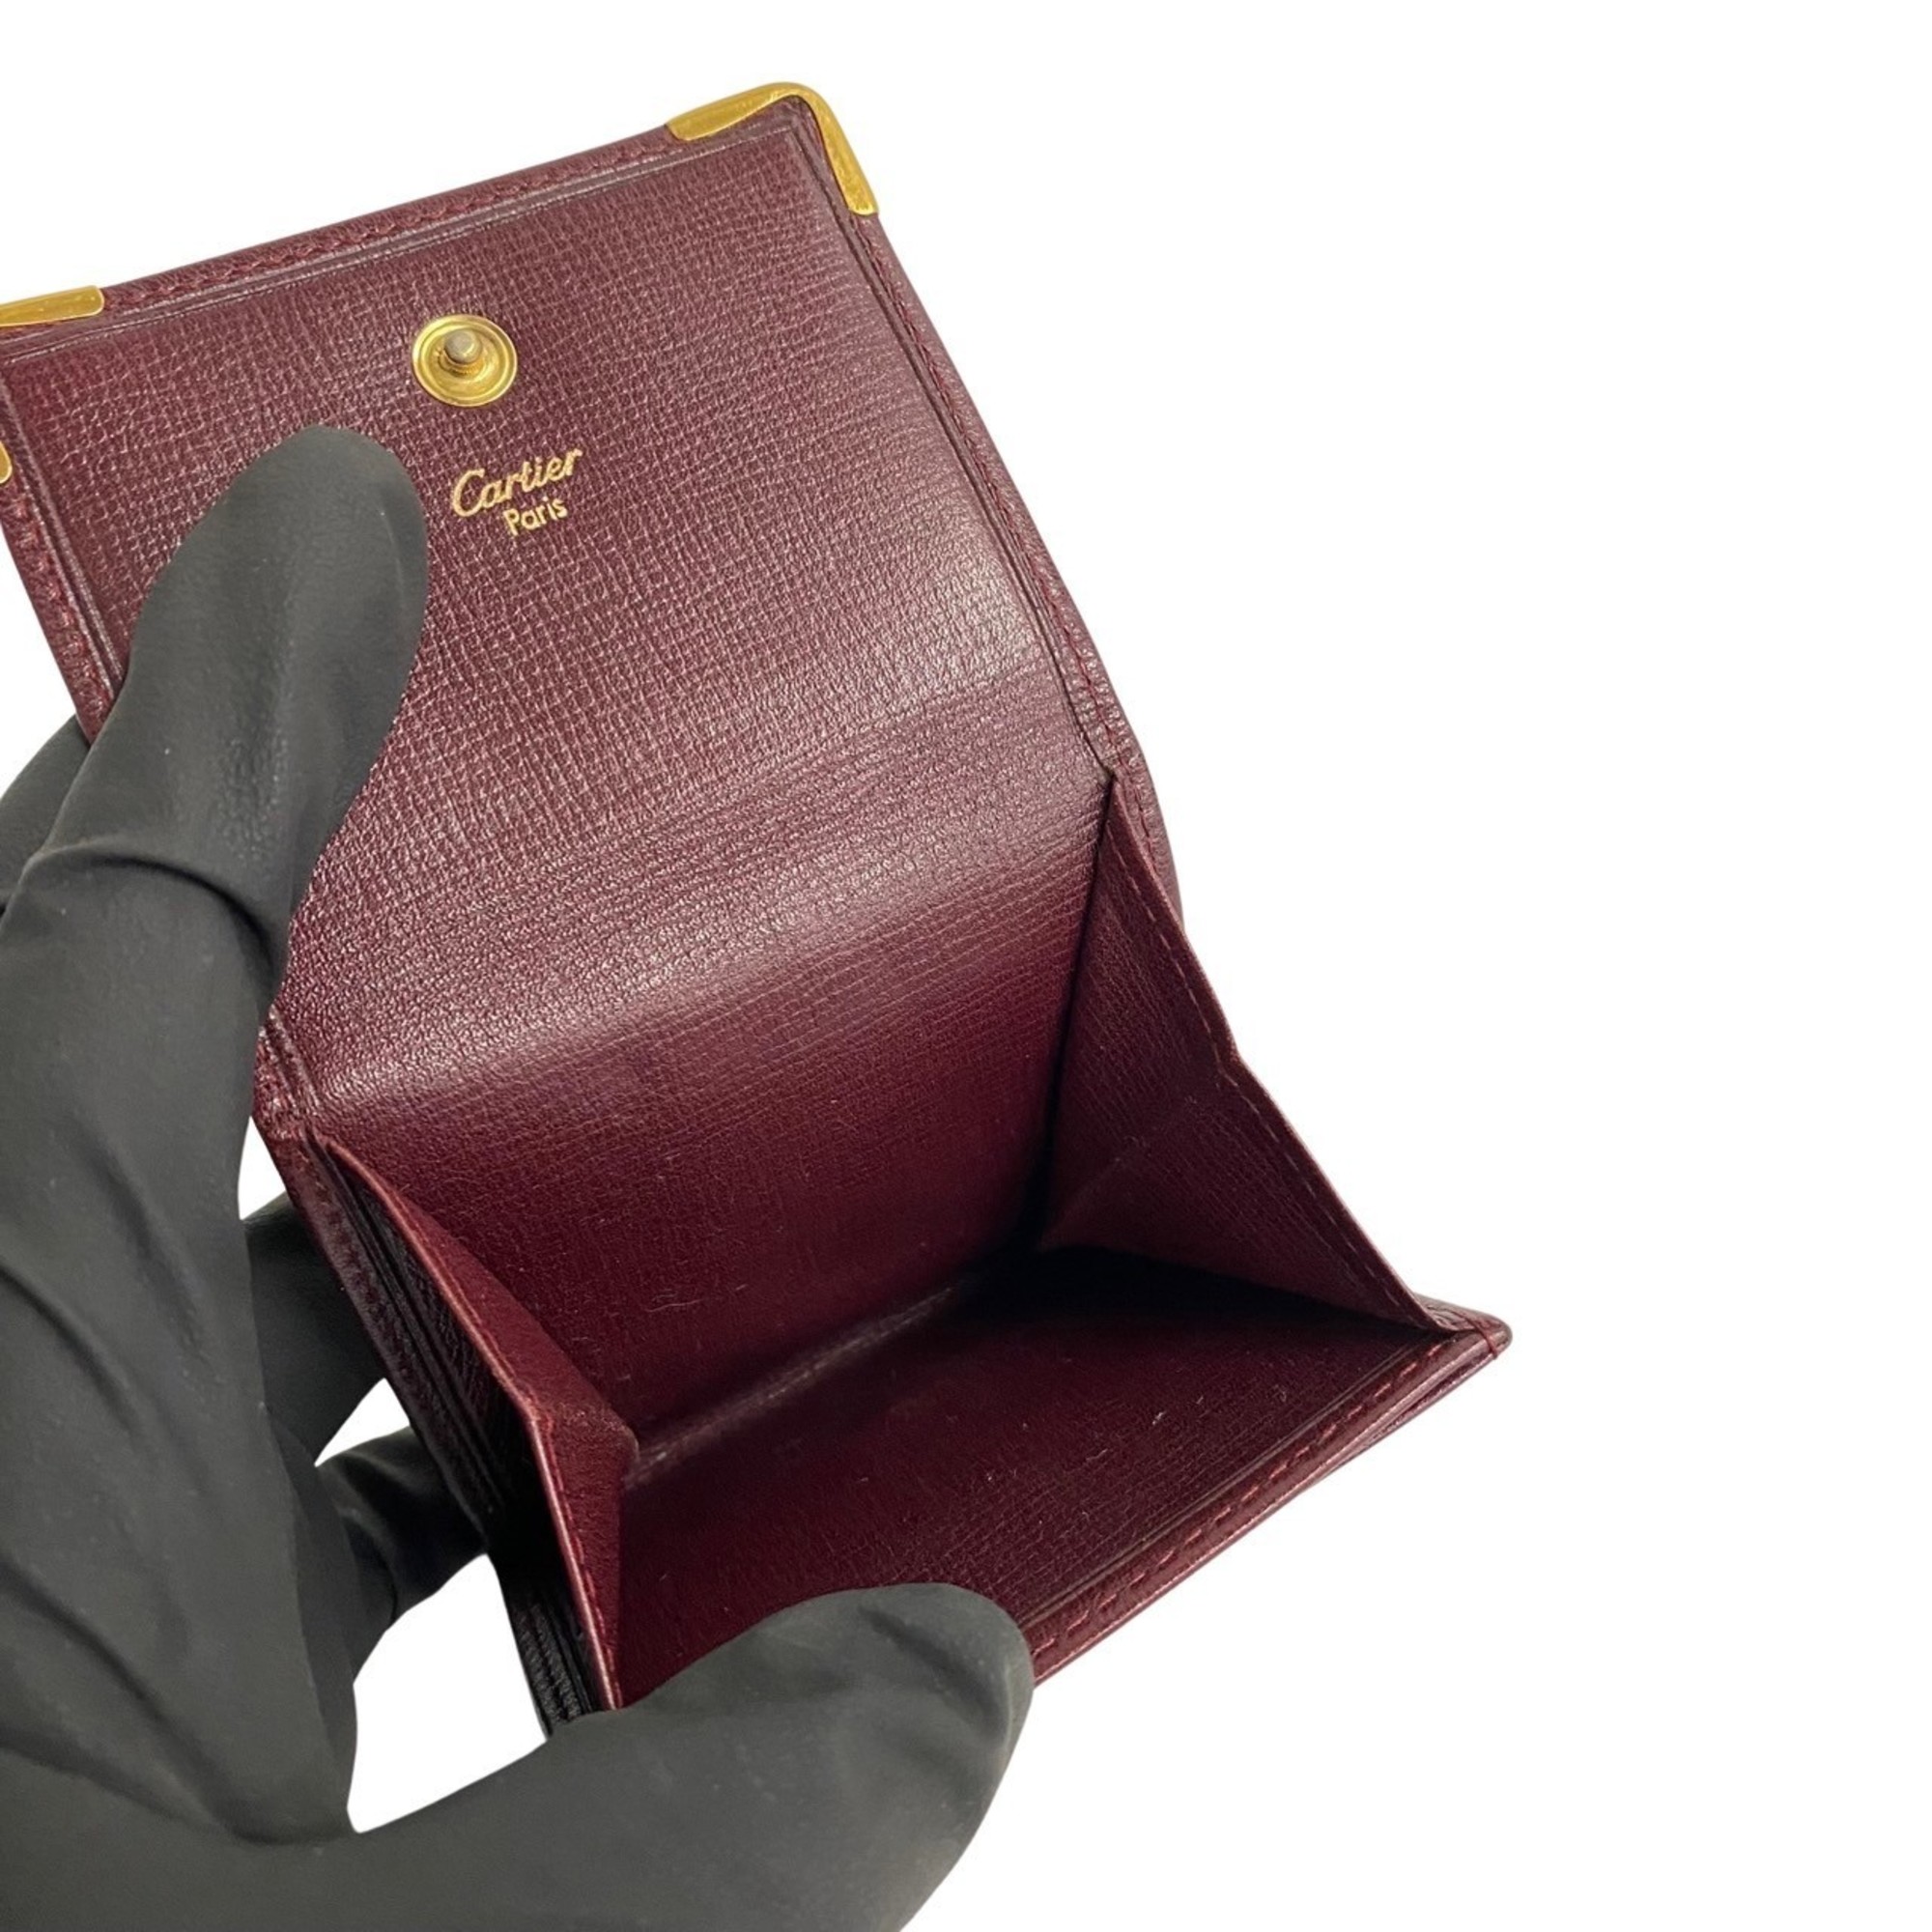 CARTIER Mastline Leather Wallet/Coin Case Coin Purse Wallet Bordeaux 88419